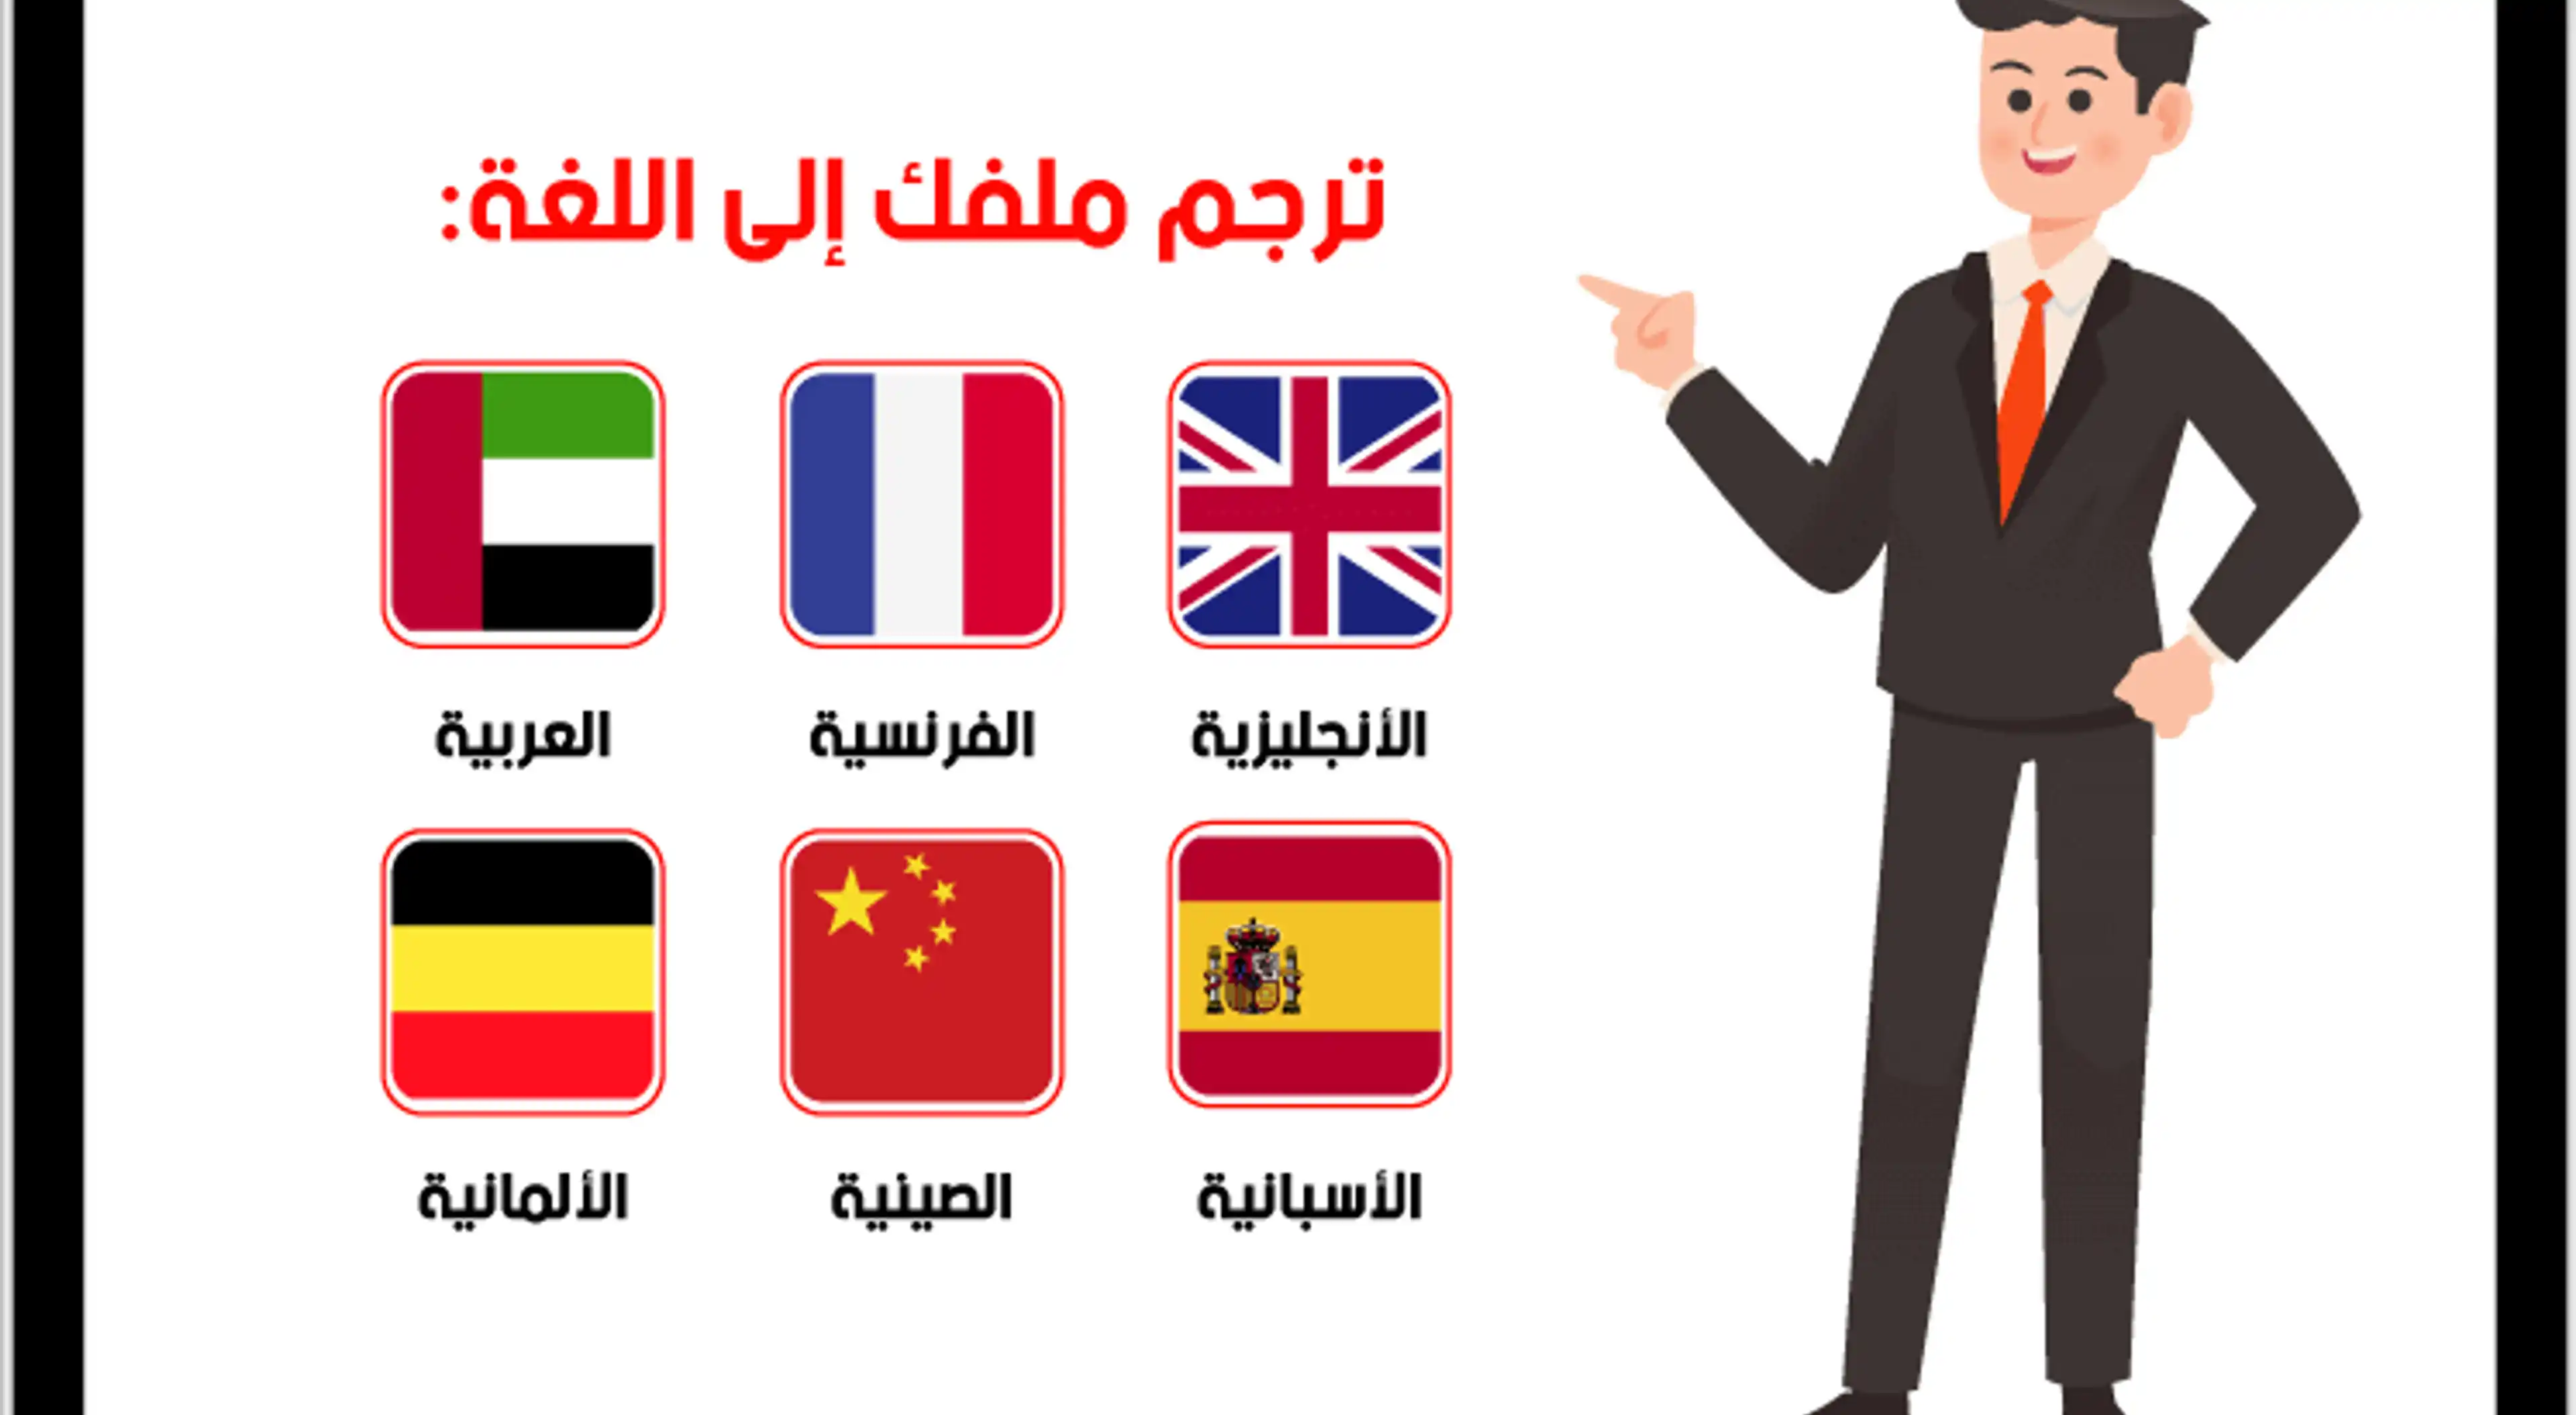 نقدم خدمات الترجمة الاحترافية من وإلى جميع اللغات